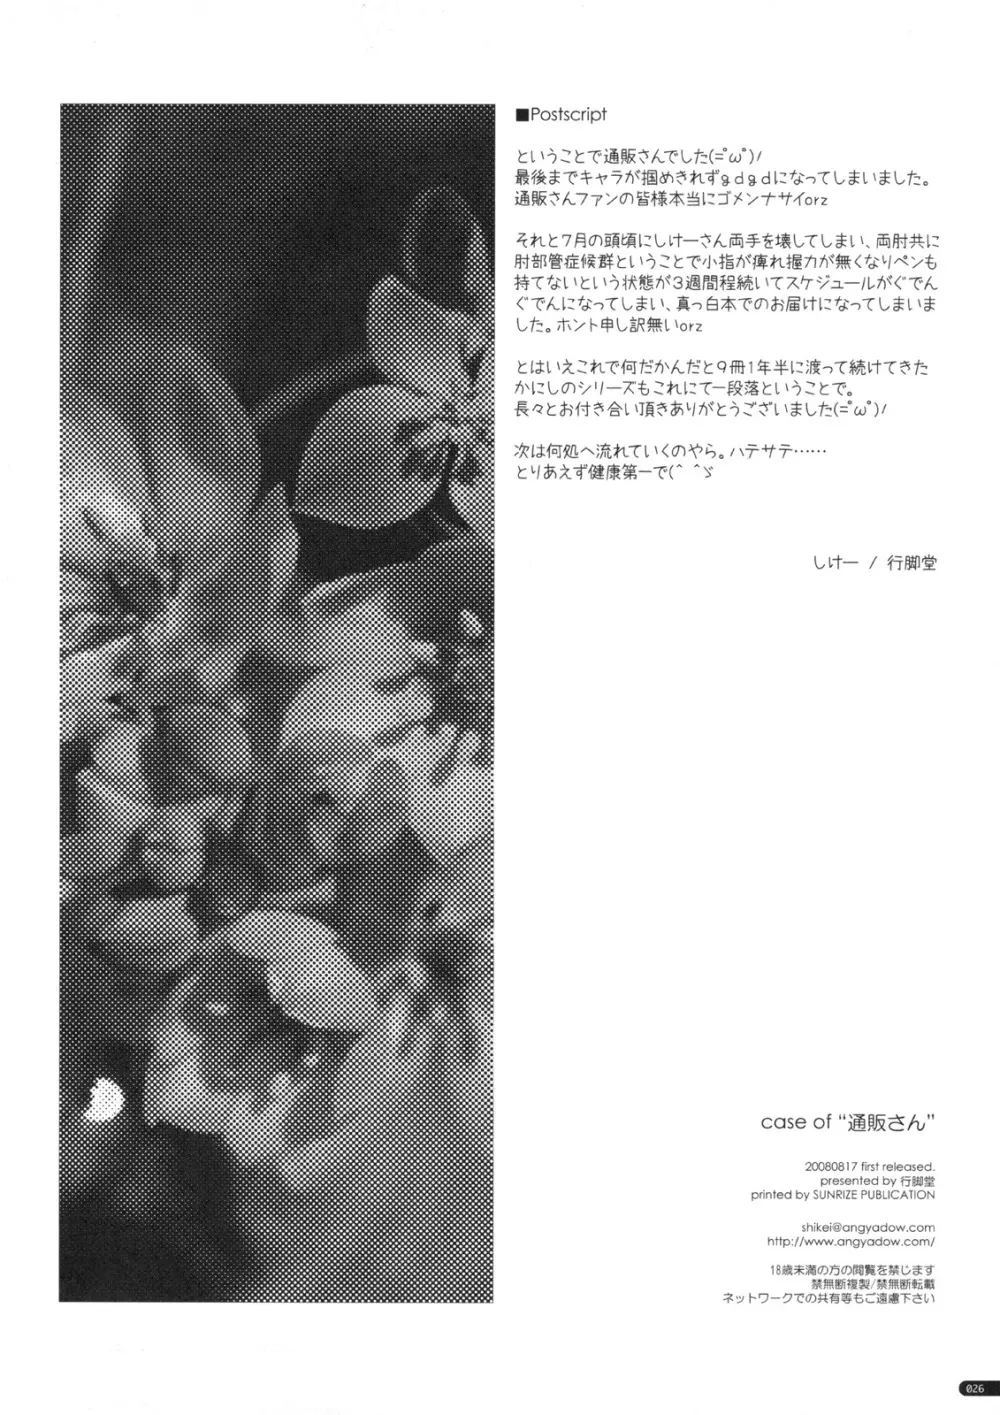 case of “通販さん” 25ページ